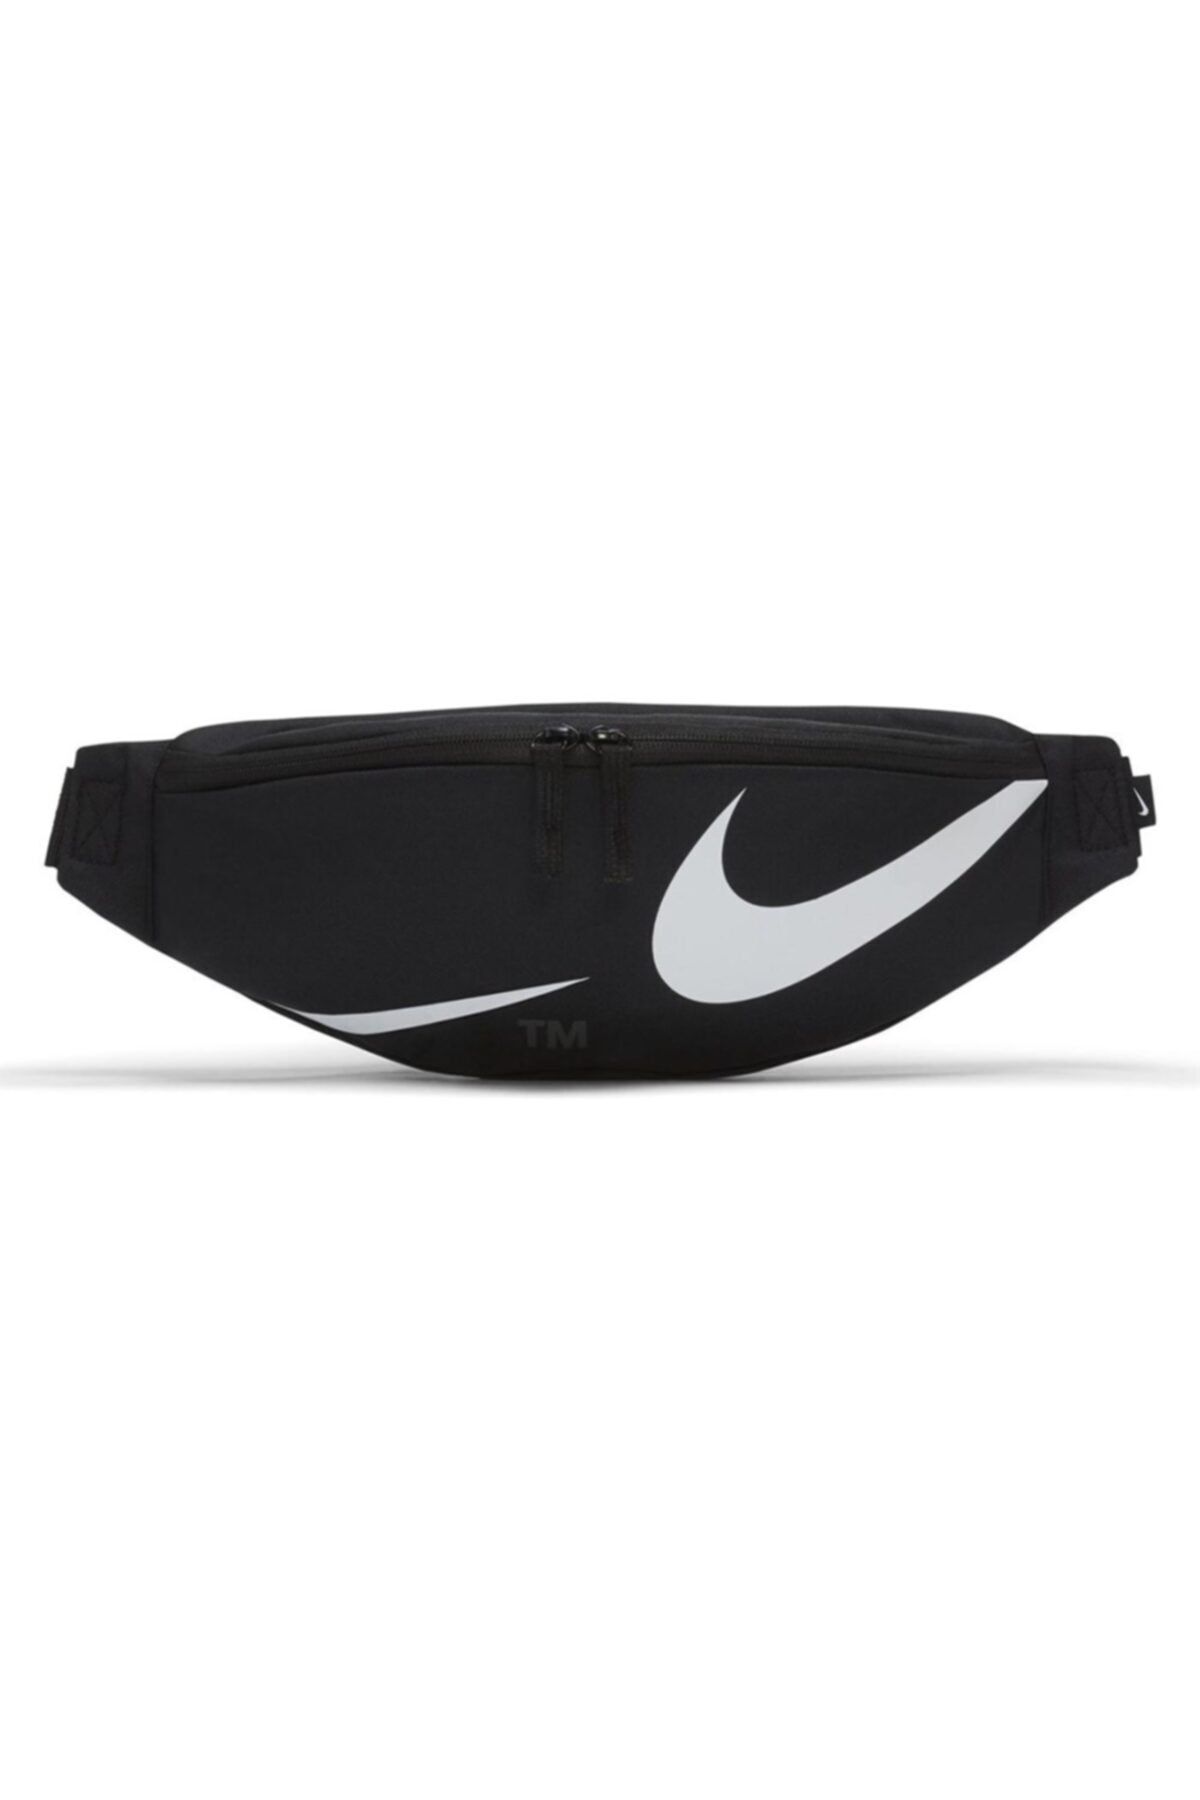 Nike Nk Herıtage Waıstpack - Swoosh Unisex Siyah Bel Çantası - Dj7378-010